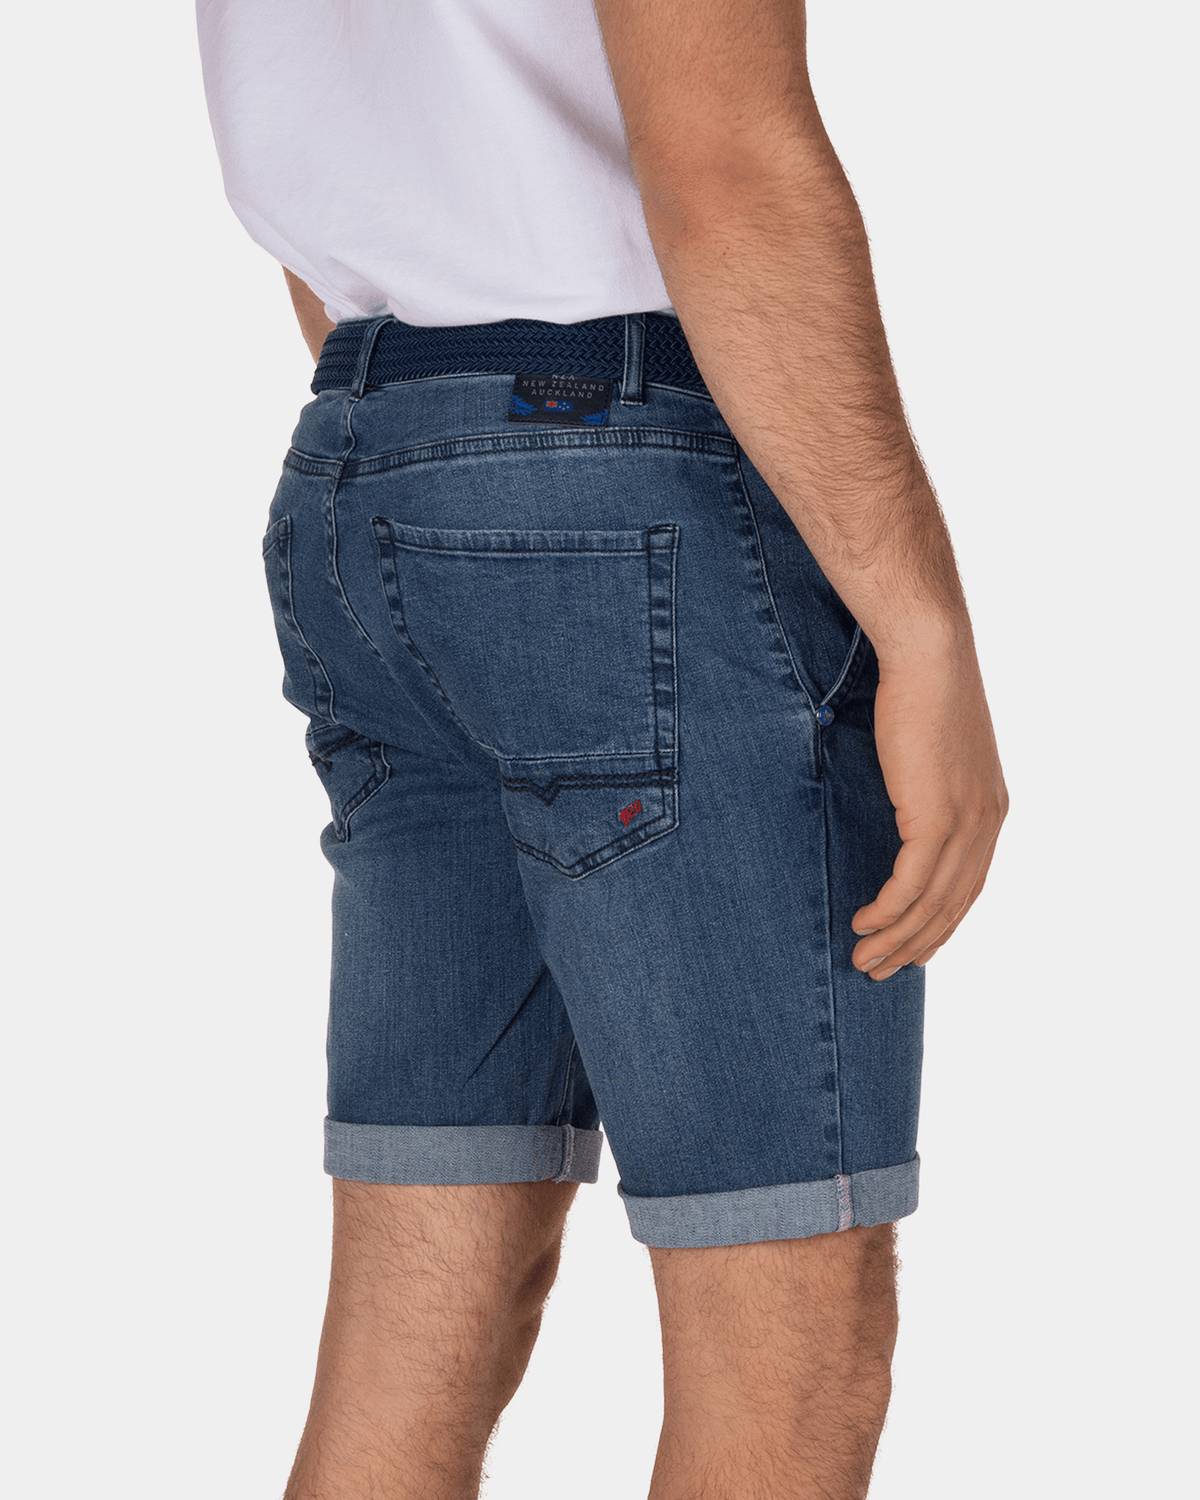 Dunedine jeans shorts - Medium Stone Wash